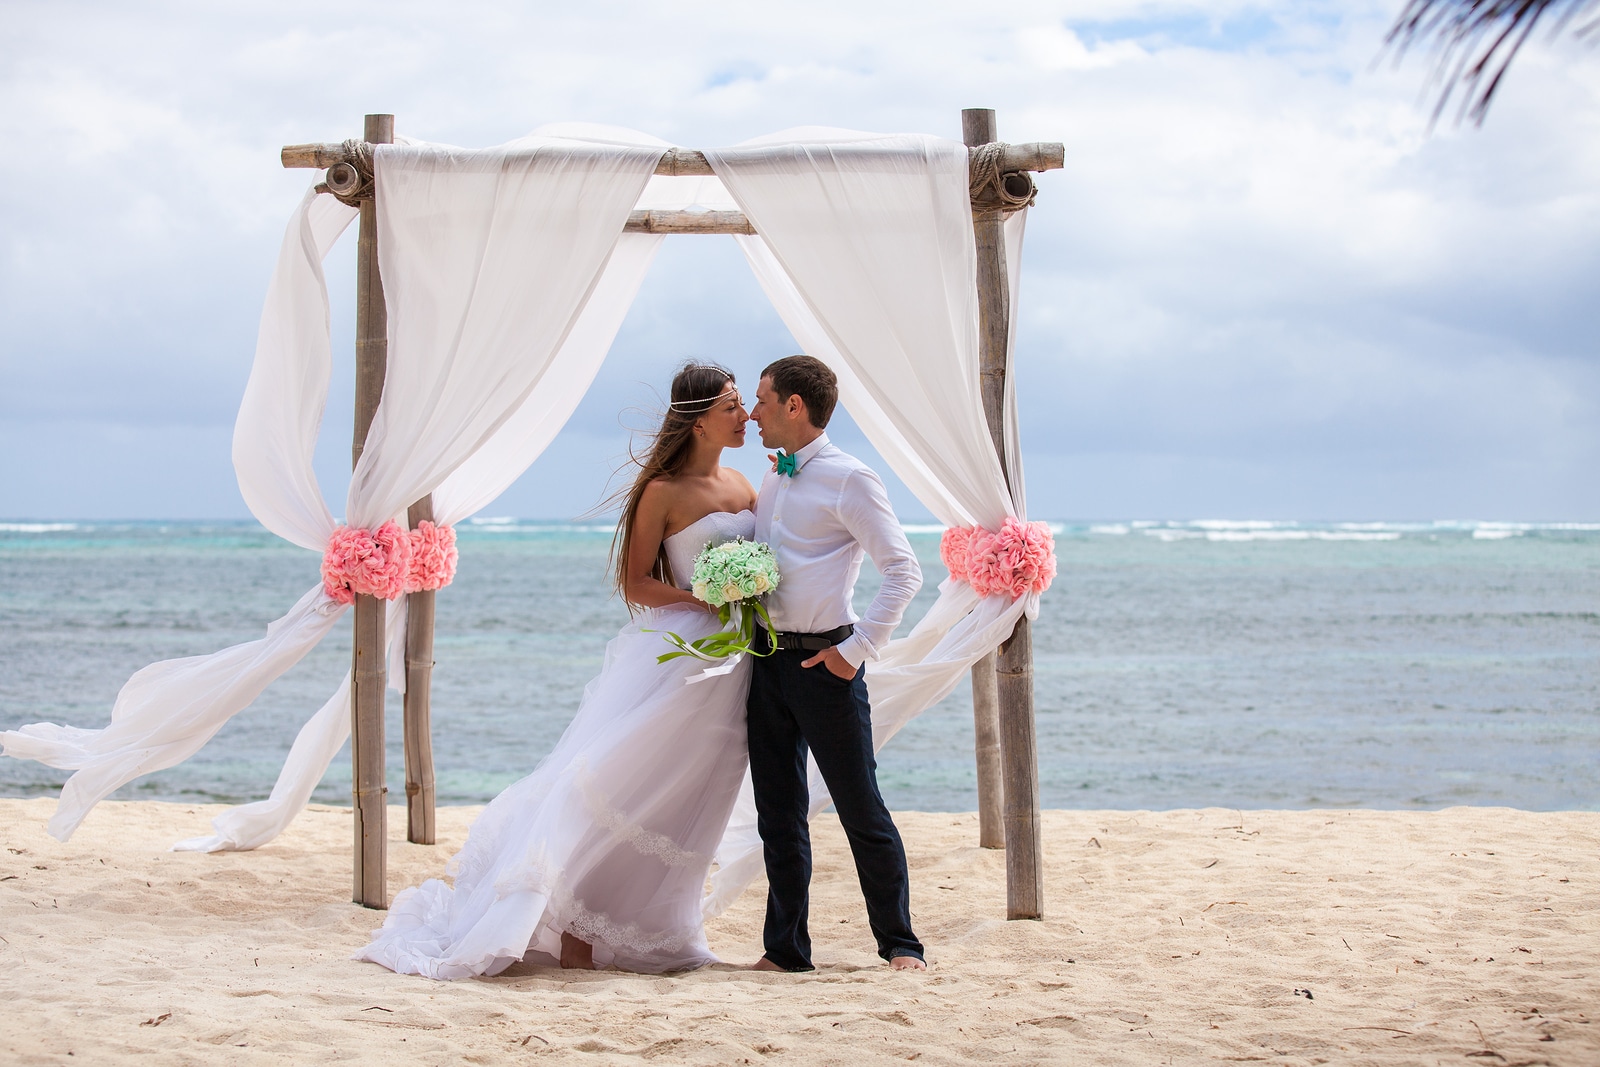 Planea una romántica boda en la playa con Hacienda Encantada